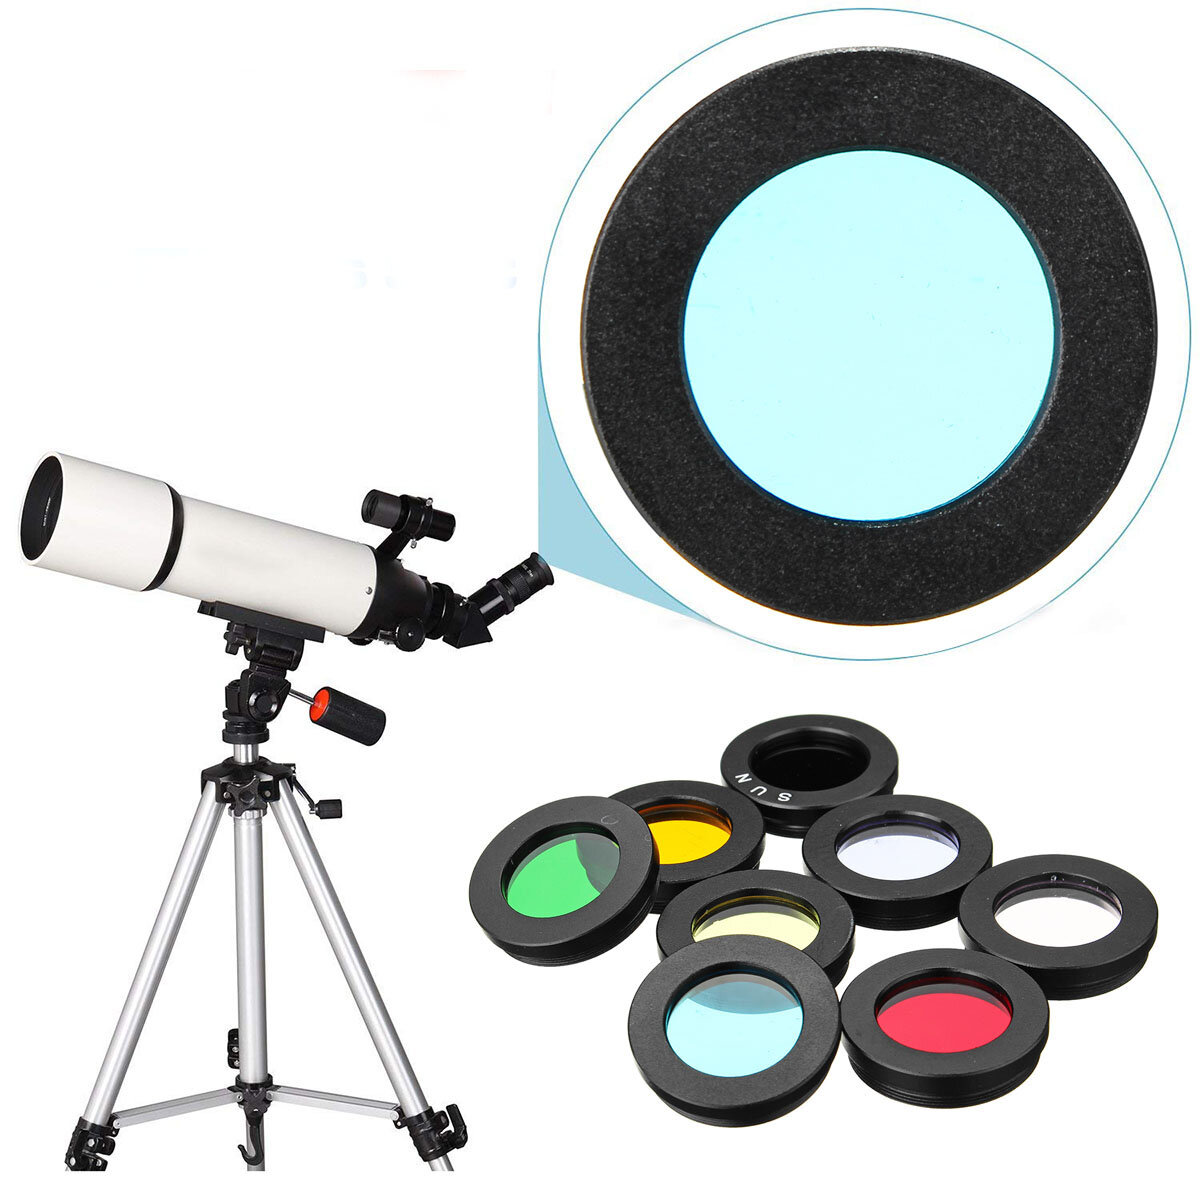 Juego de filtros para lentes de telescopio de 8 piezas de 1,25 pulgadas: filtro de nebulosa, filtro de luna, filtro solar y otros accesorios para el ocular